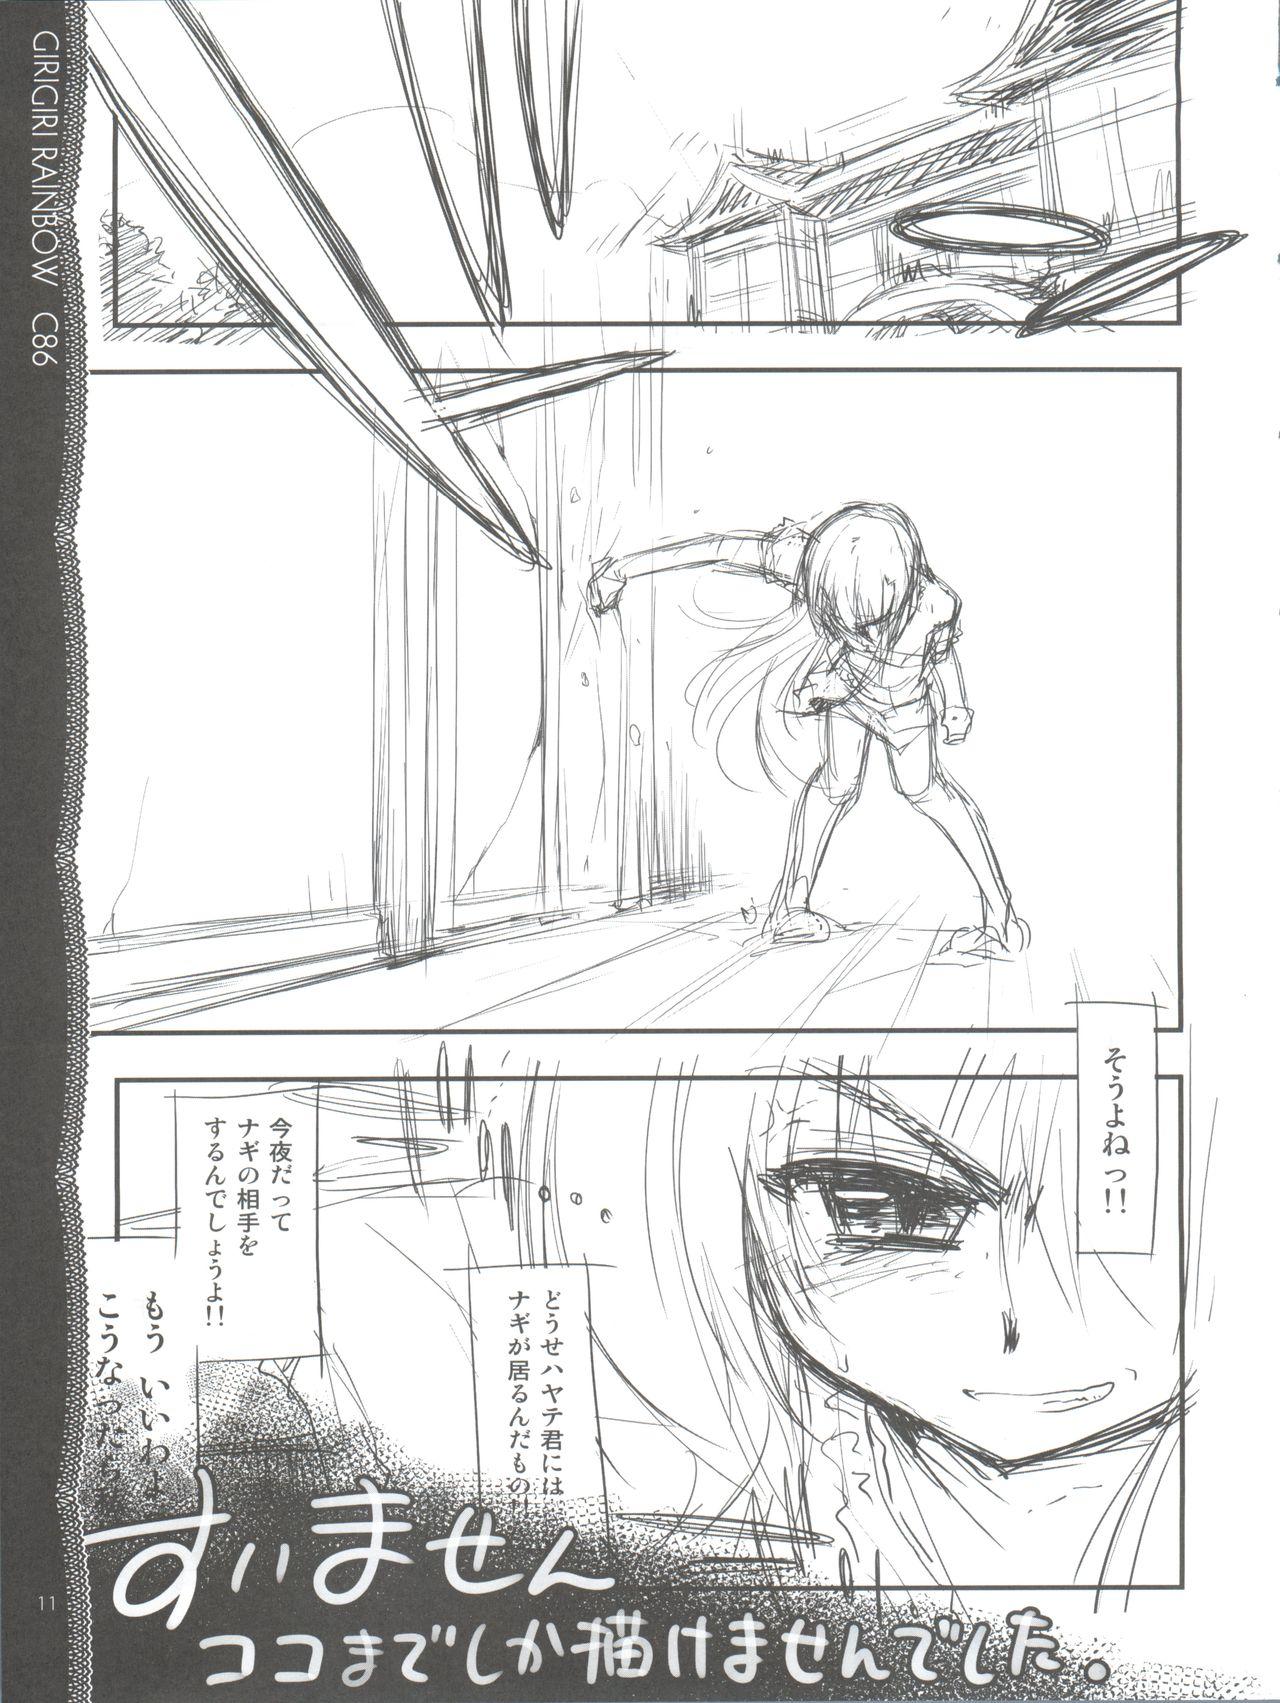 Ruiva Sonna ni Mirareru to Hazukashiiba!! - Hayate no gotoku Art - Page 12